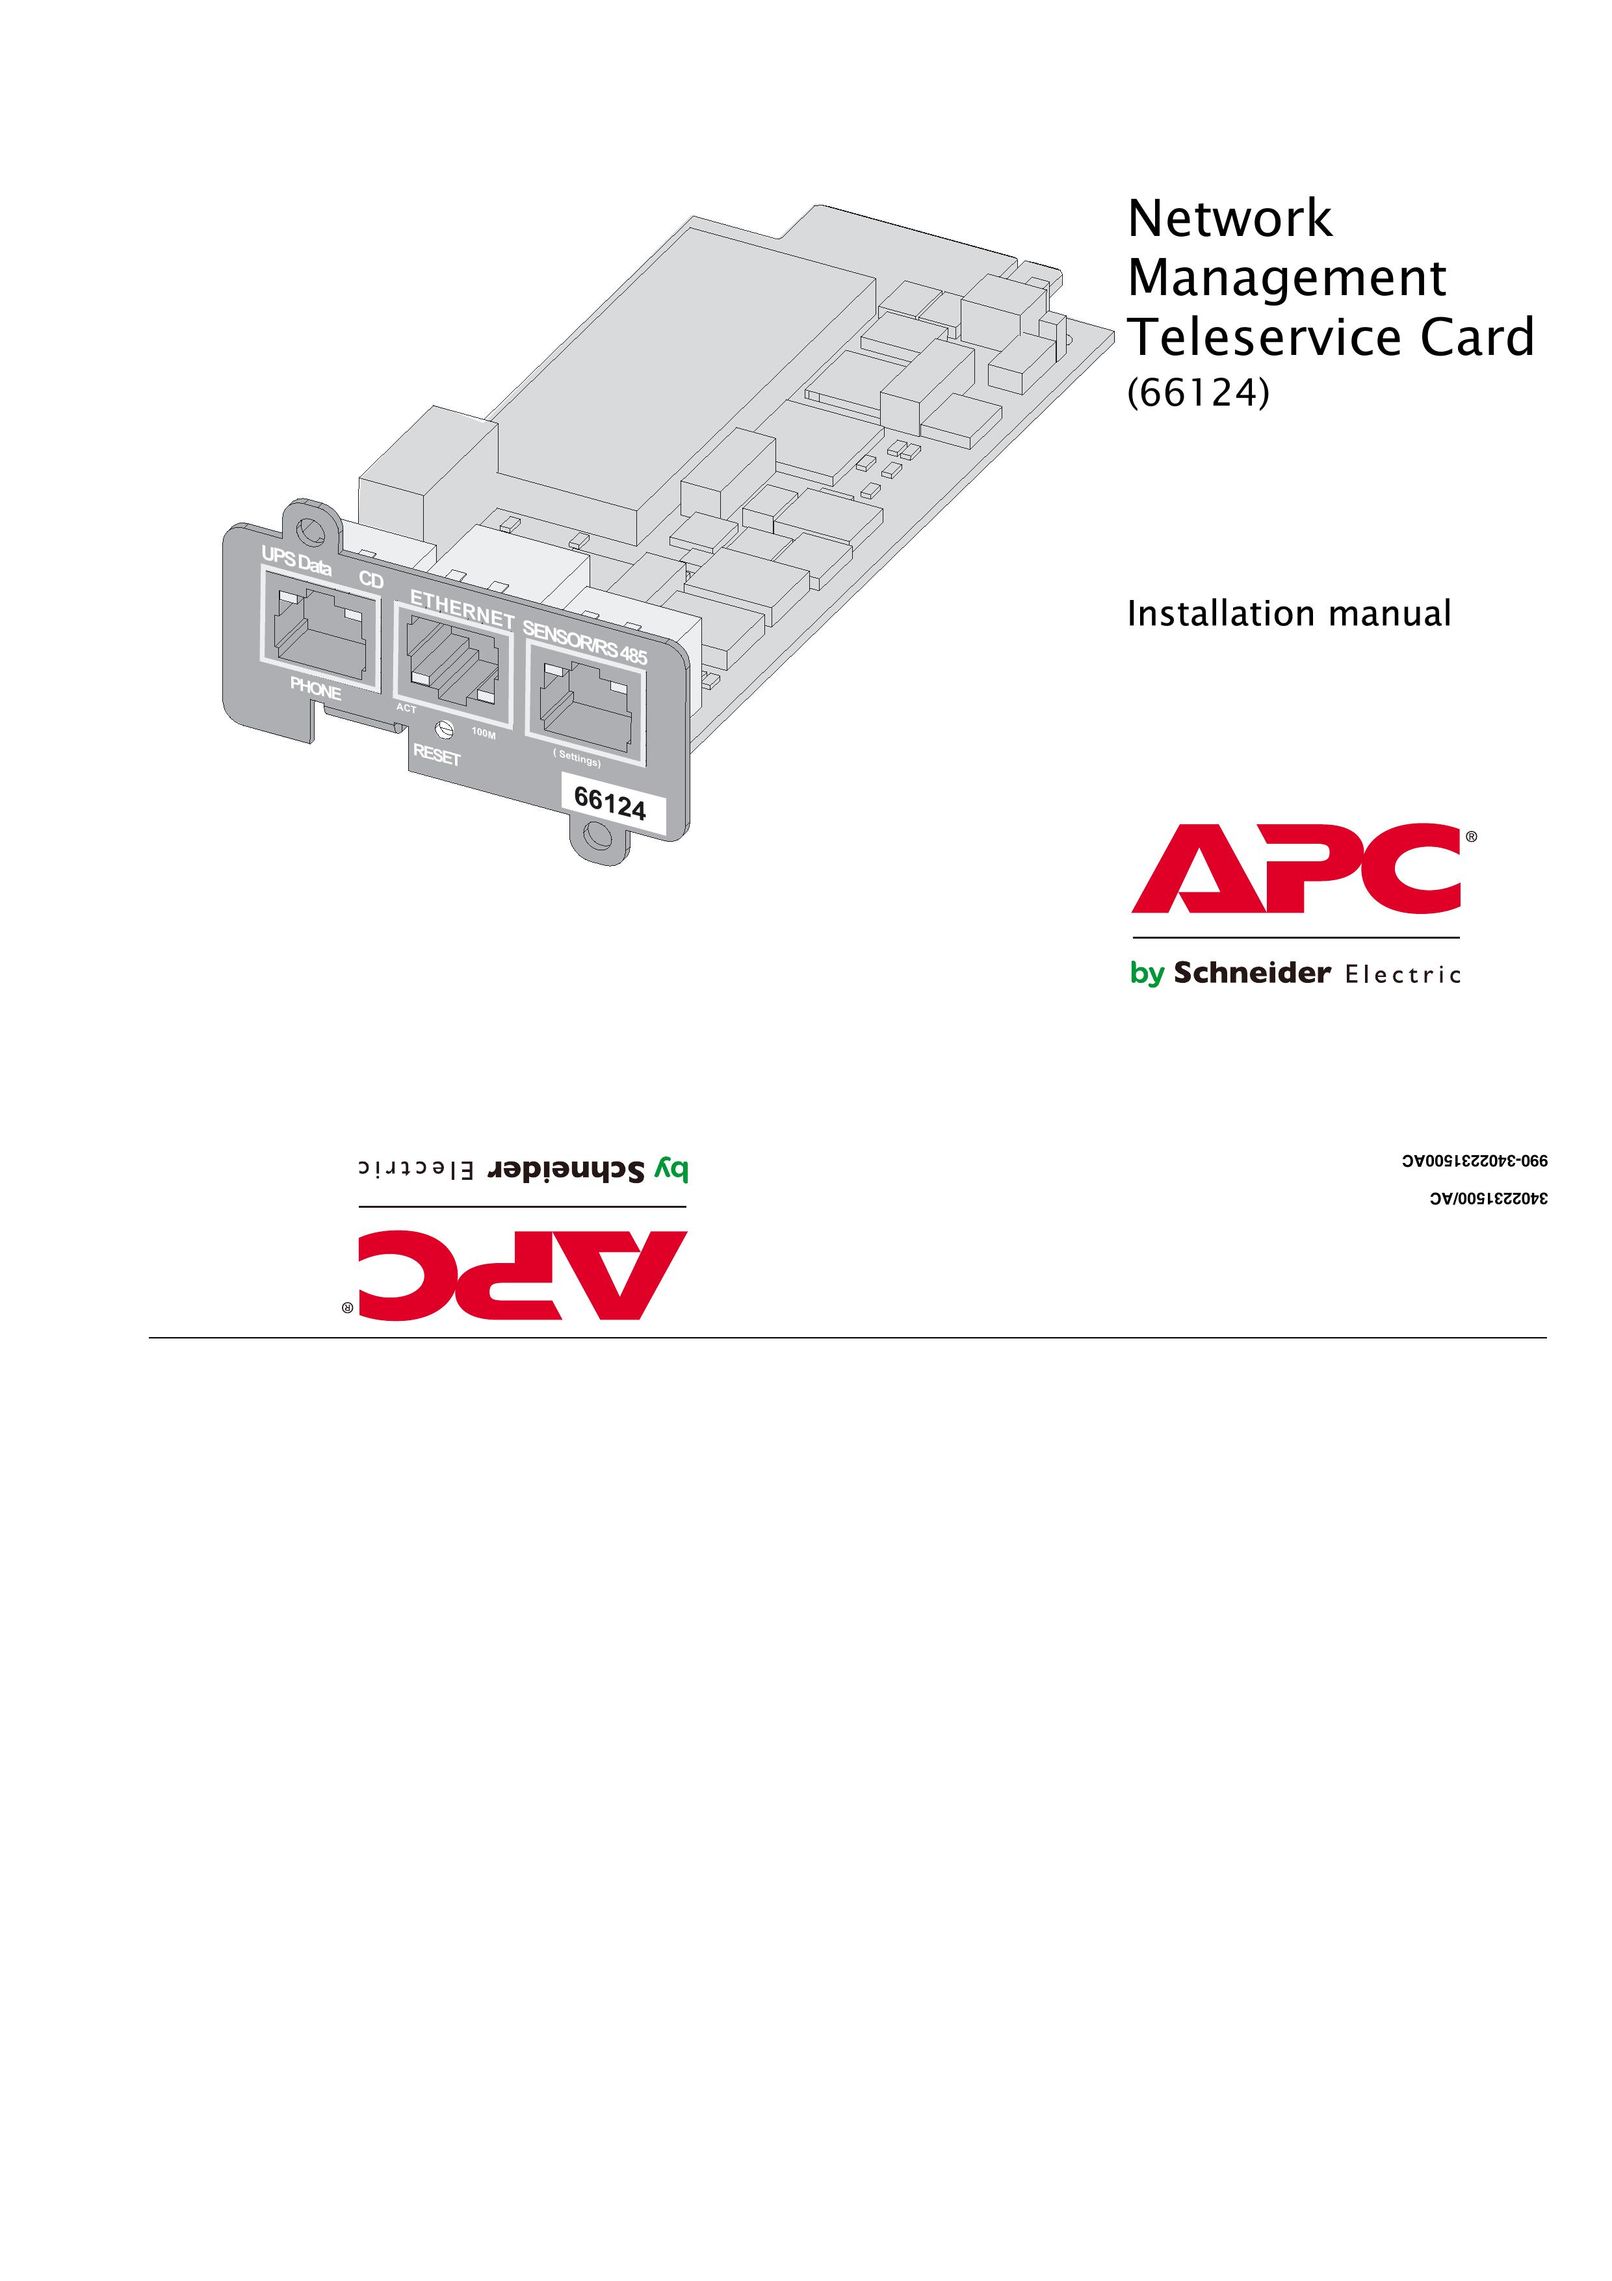 APC 66124 Network Card User Manual